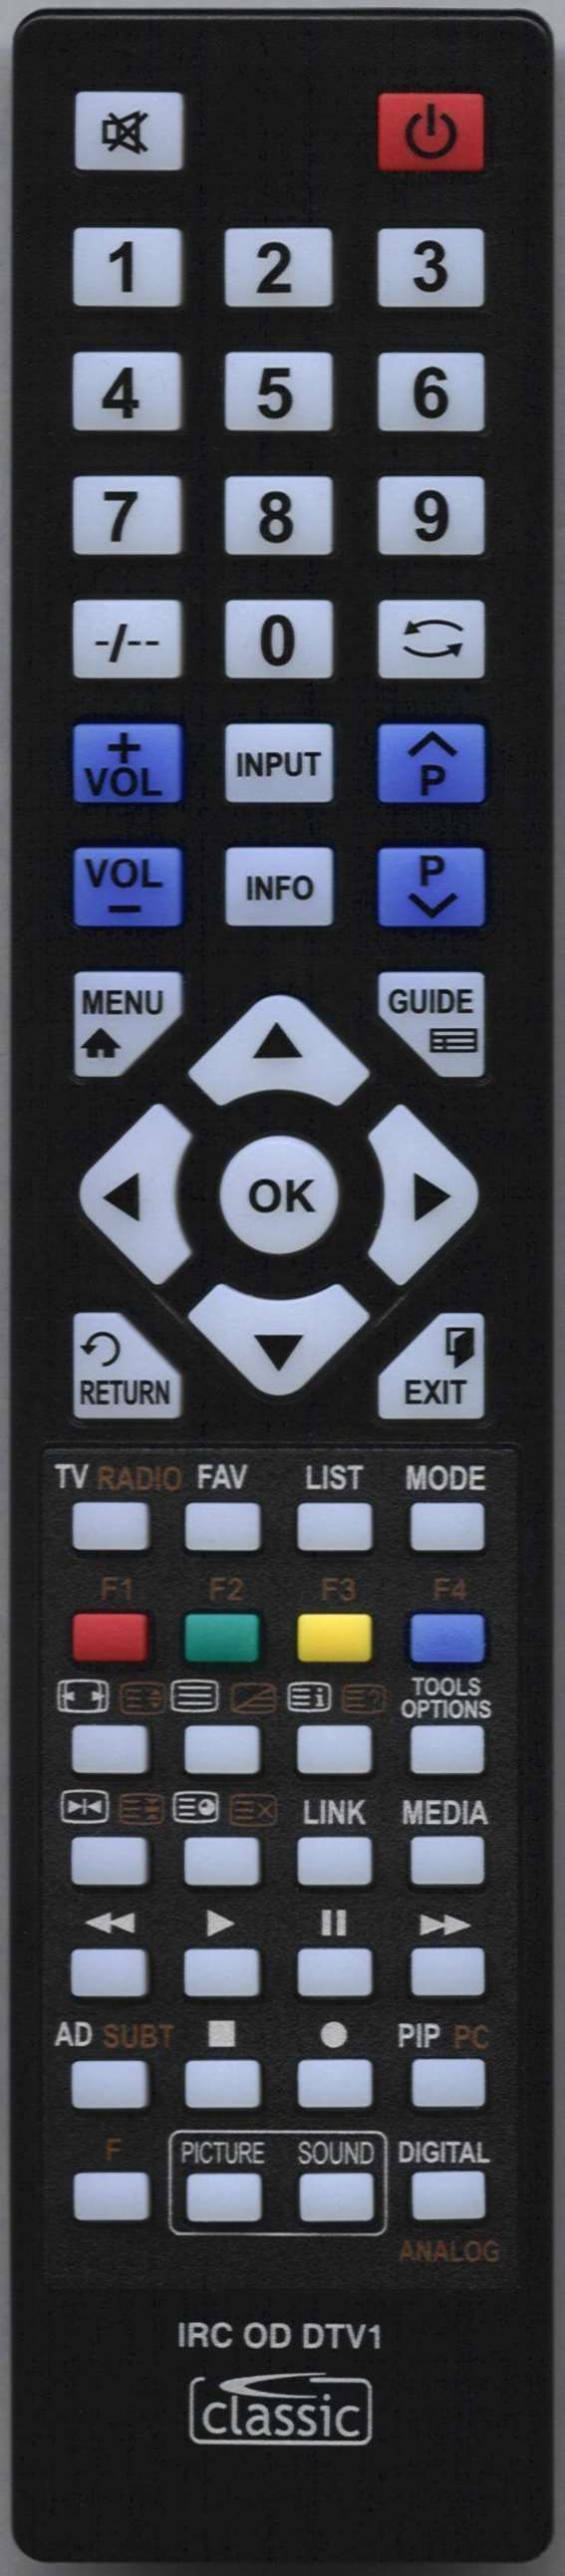 AKURA APL18568 Remote Control